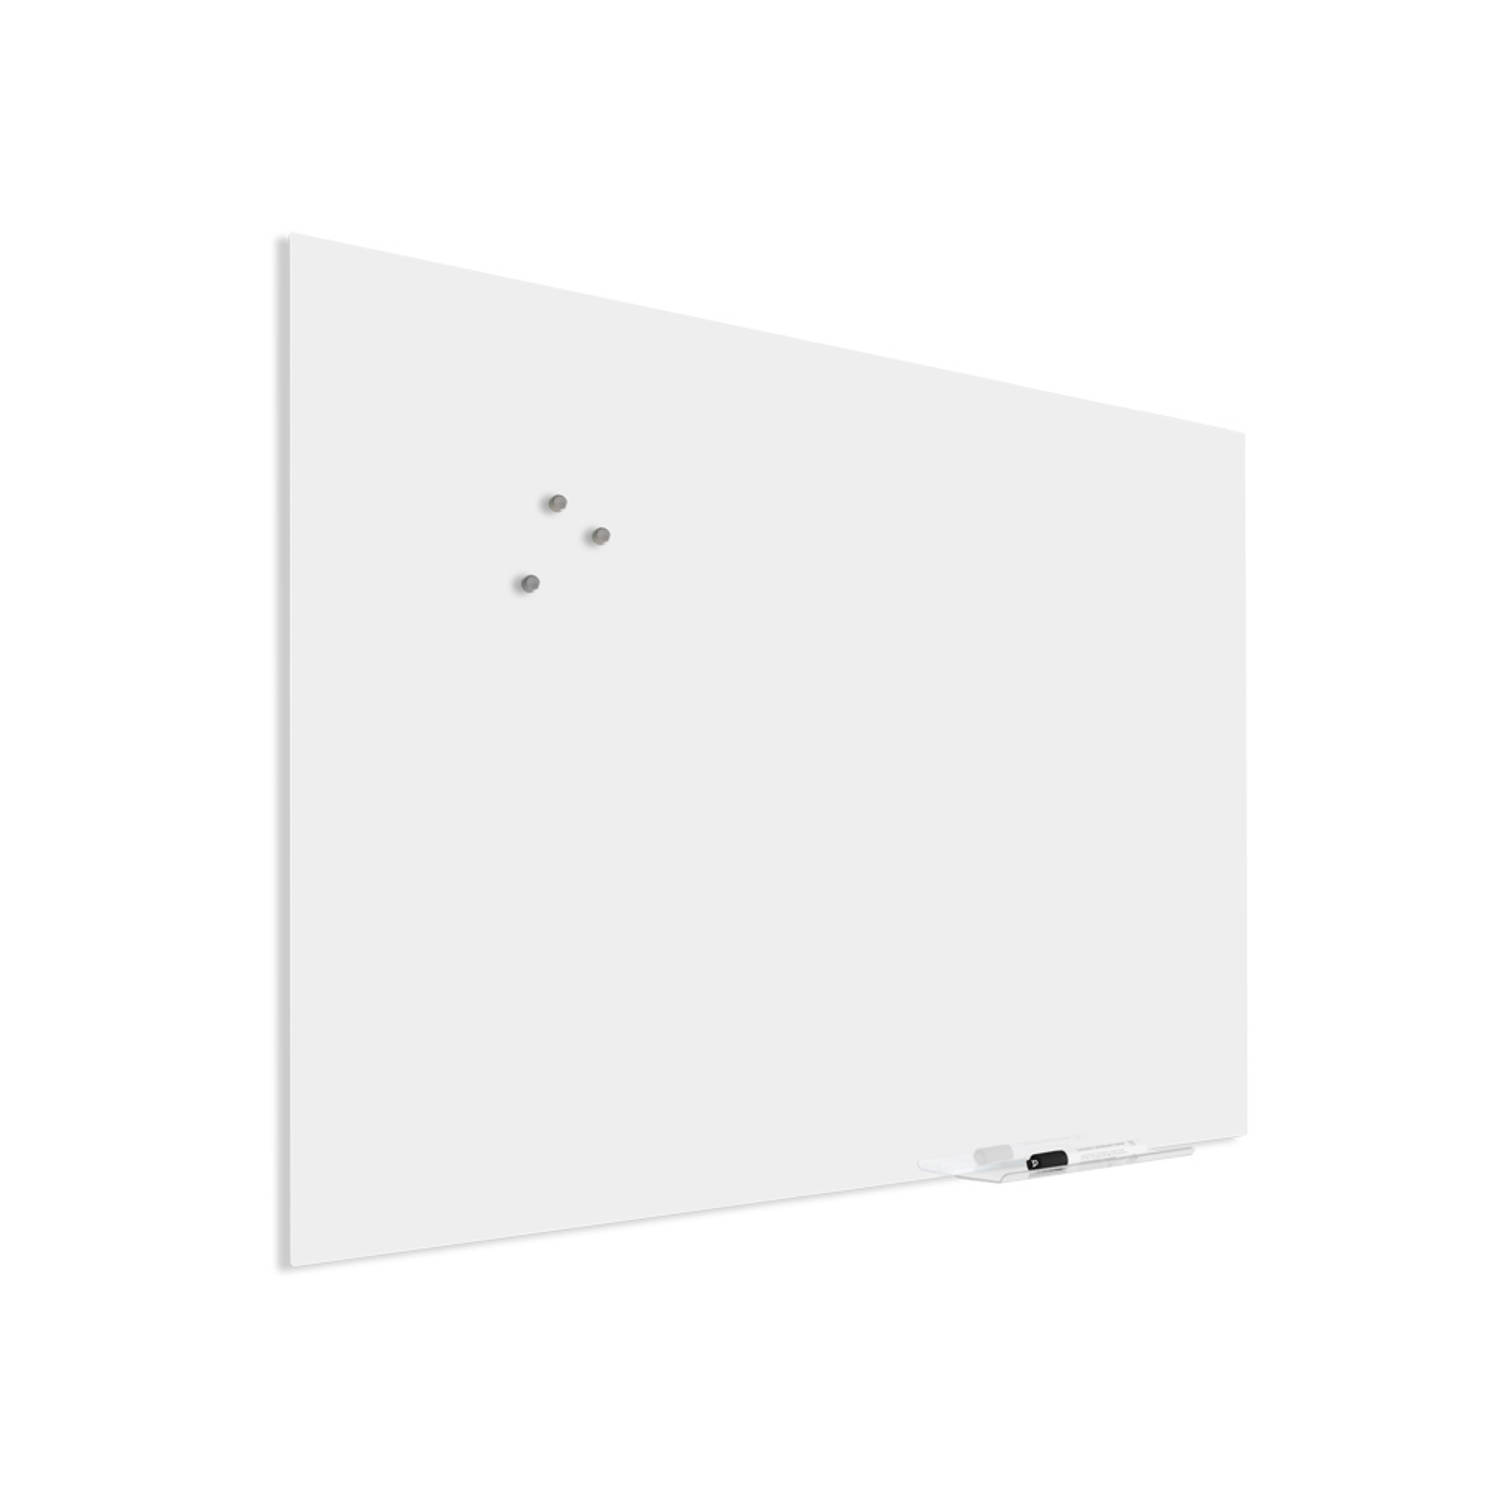 IVOL Glassboard Wit 60 x 90 cm - Magneetbord - Beschrijfbaar - Magnetisch prikbord